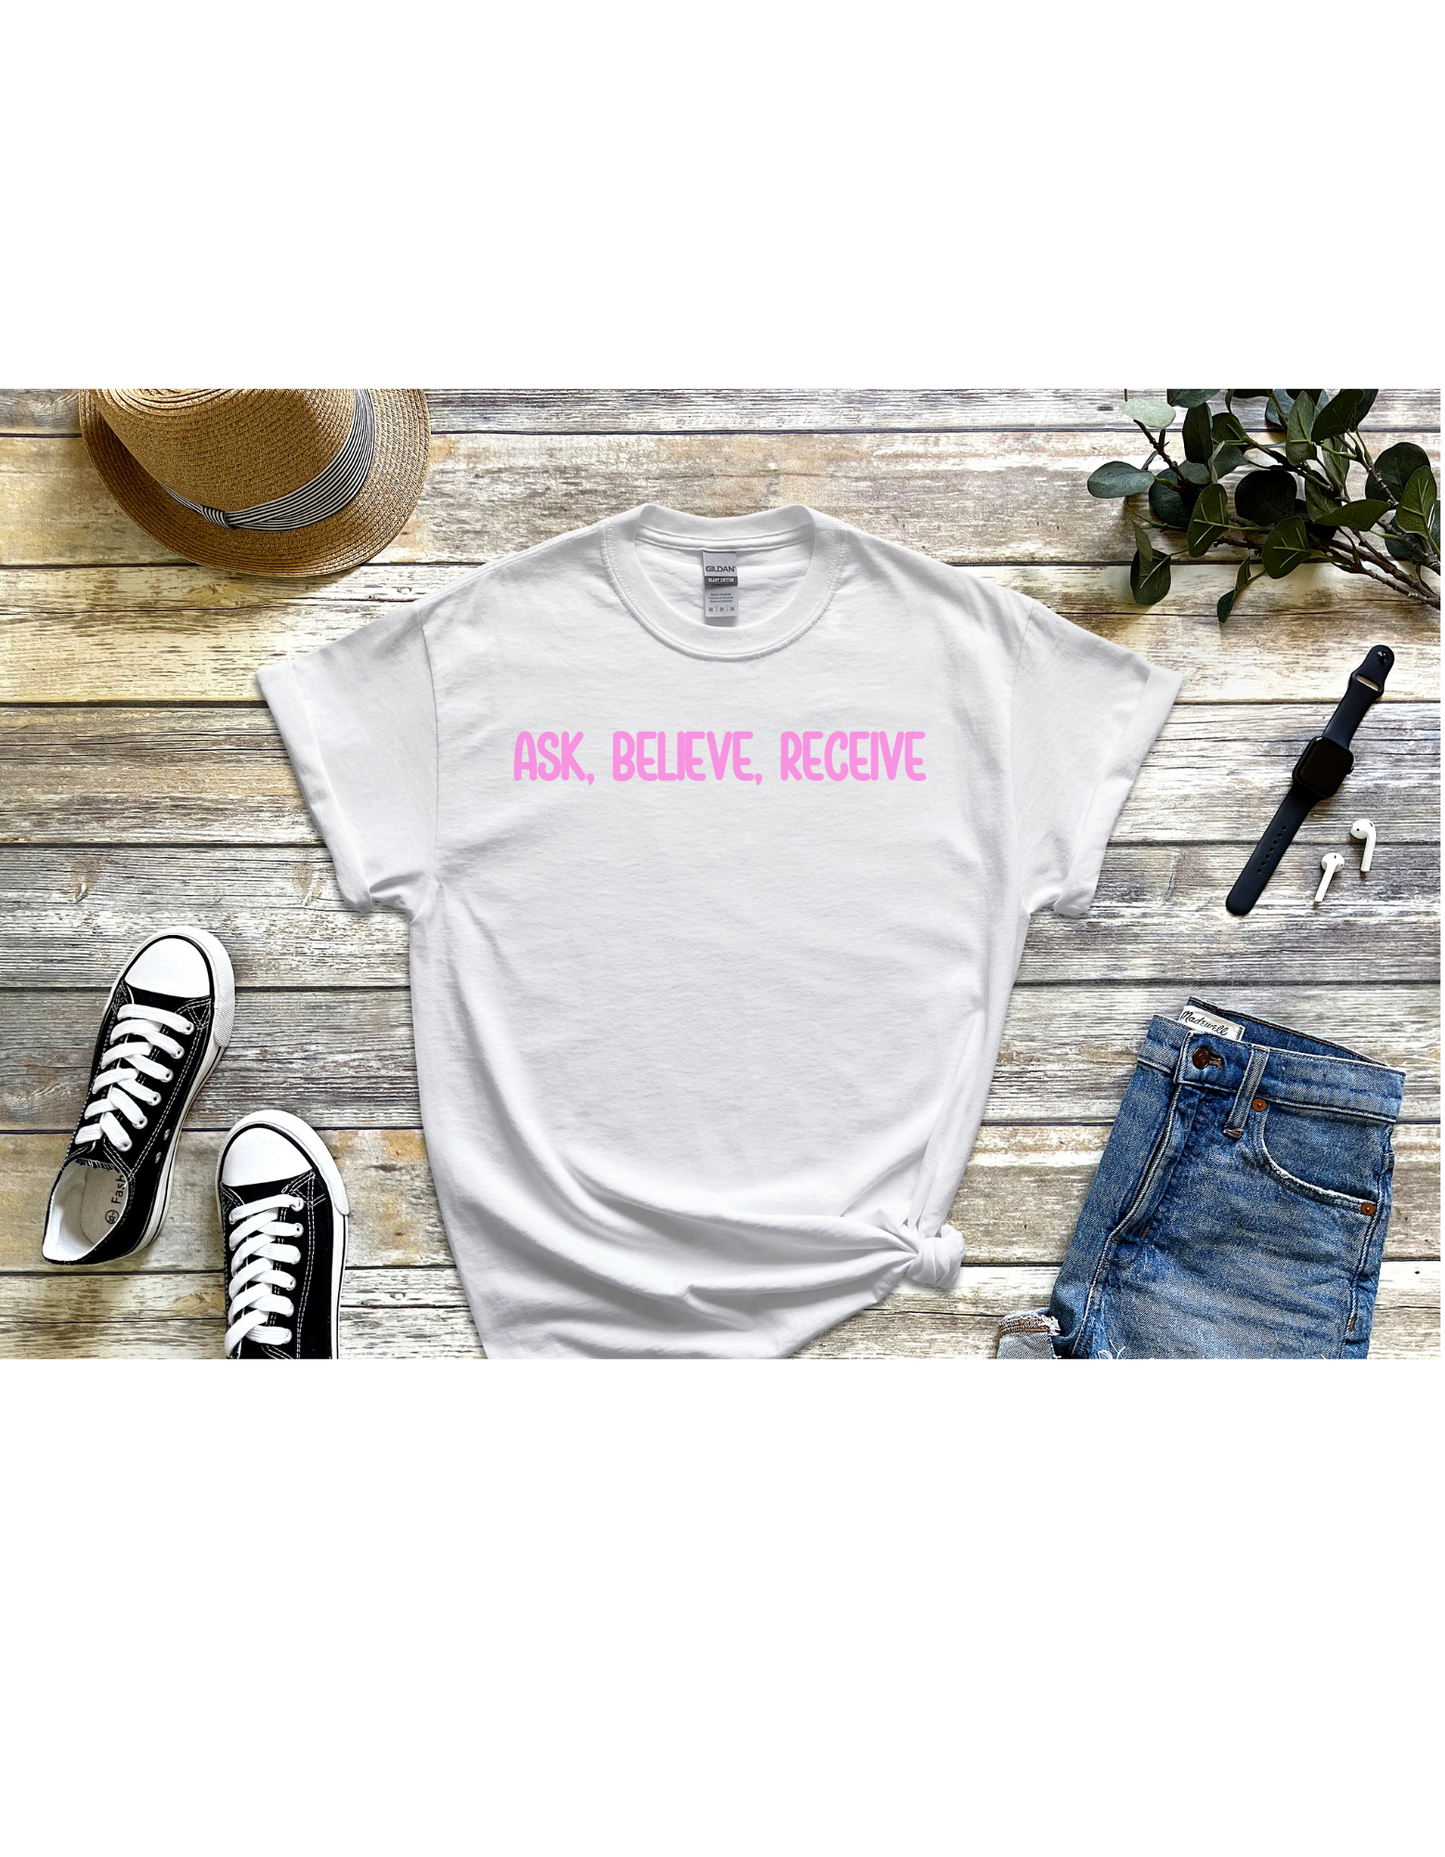 Ask, Believe, Receive Motivational Shirt, Inspirational Shirt, Faith Shirt